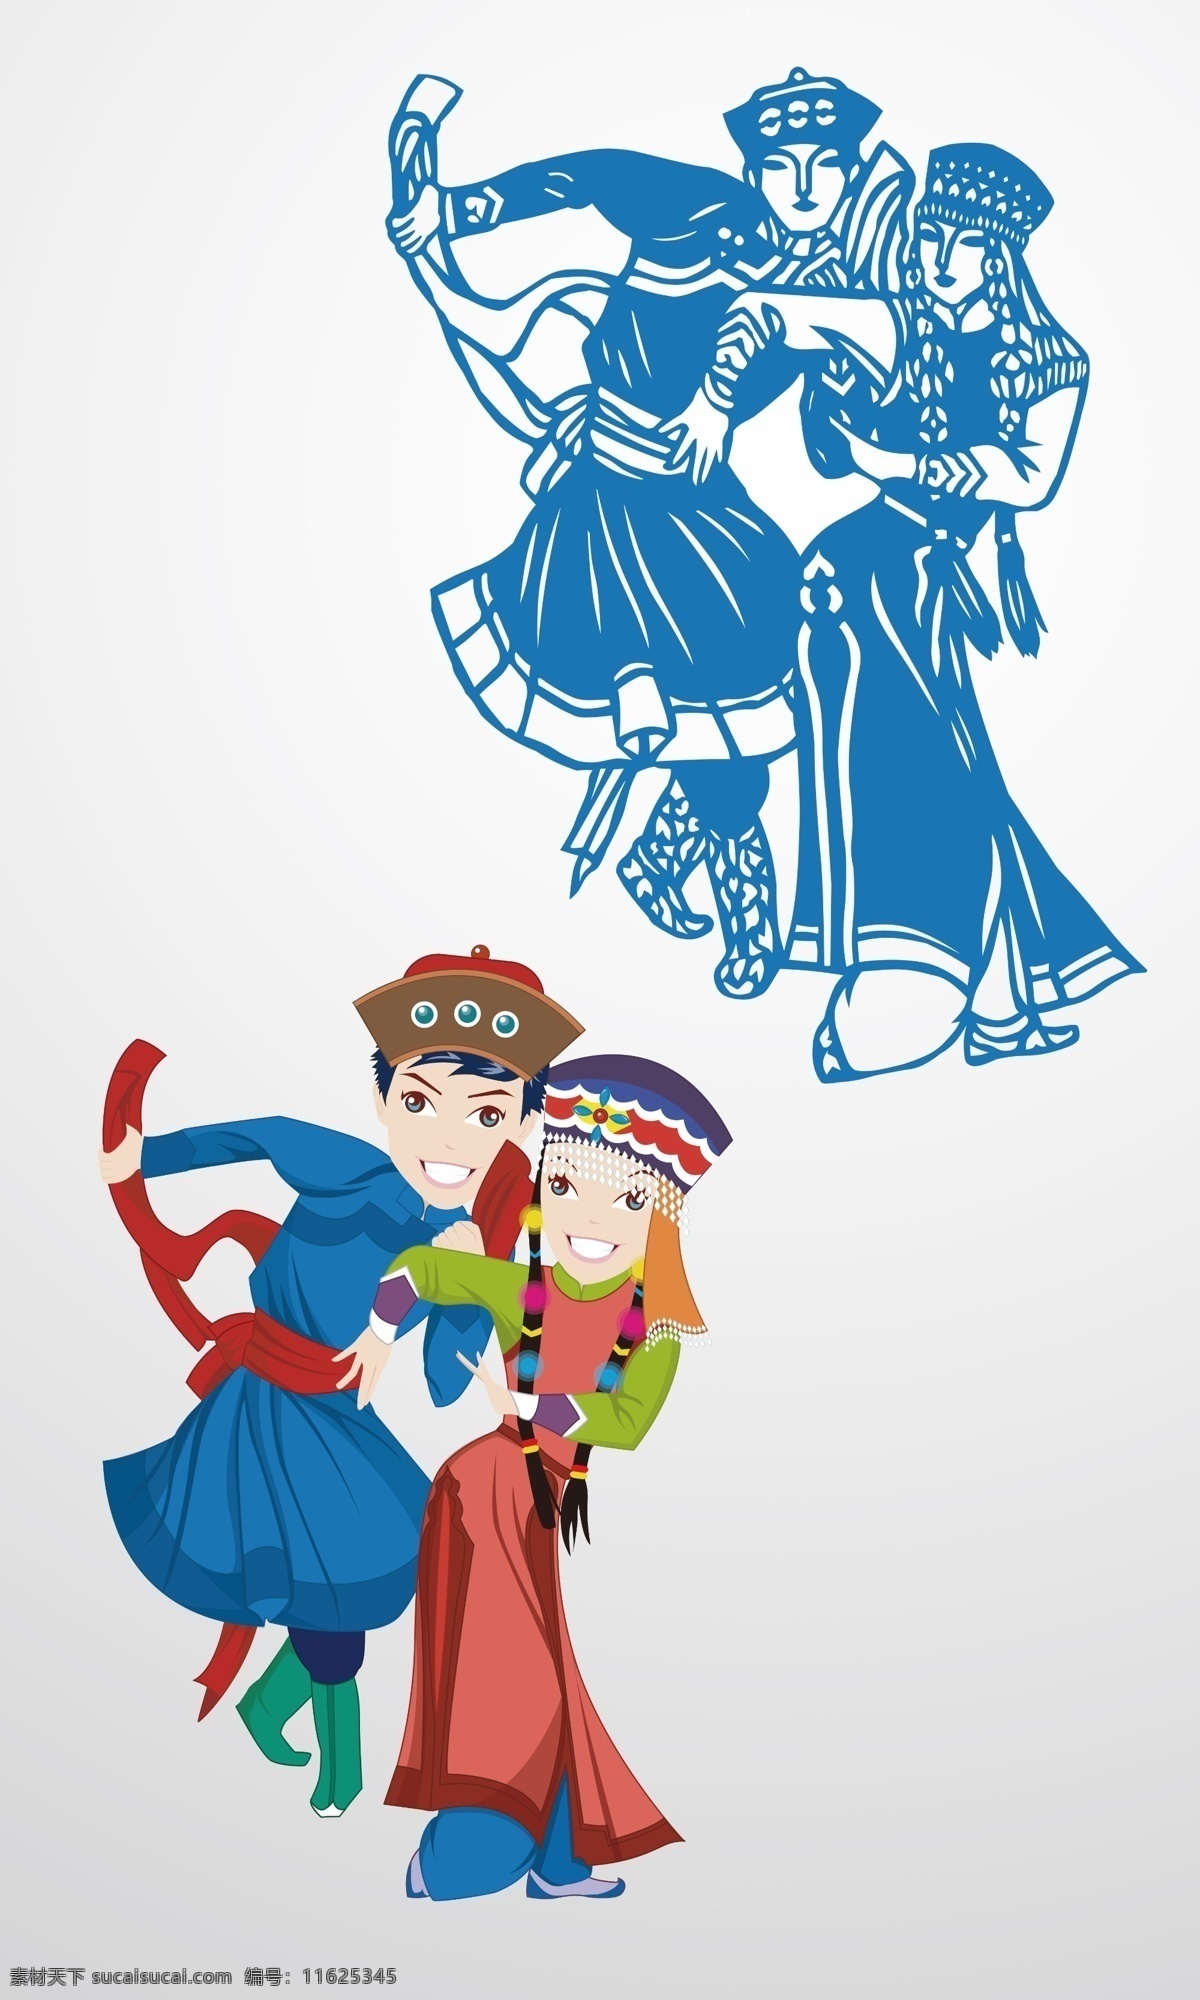 蒙古素材 蒙古人物 蒙古人 蒙古文化 安代舞 人物素材 少数民族 蒙古族 蒙古民族 蒙古 分层 人物